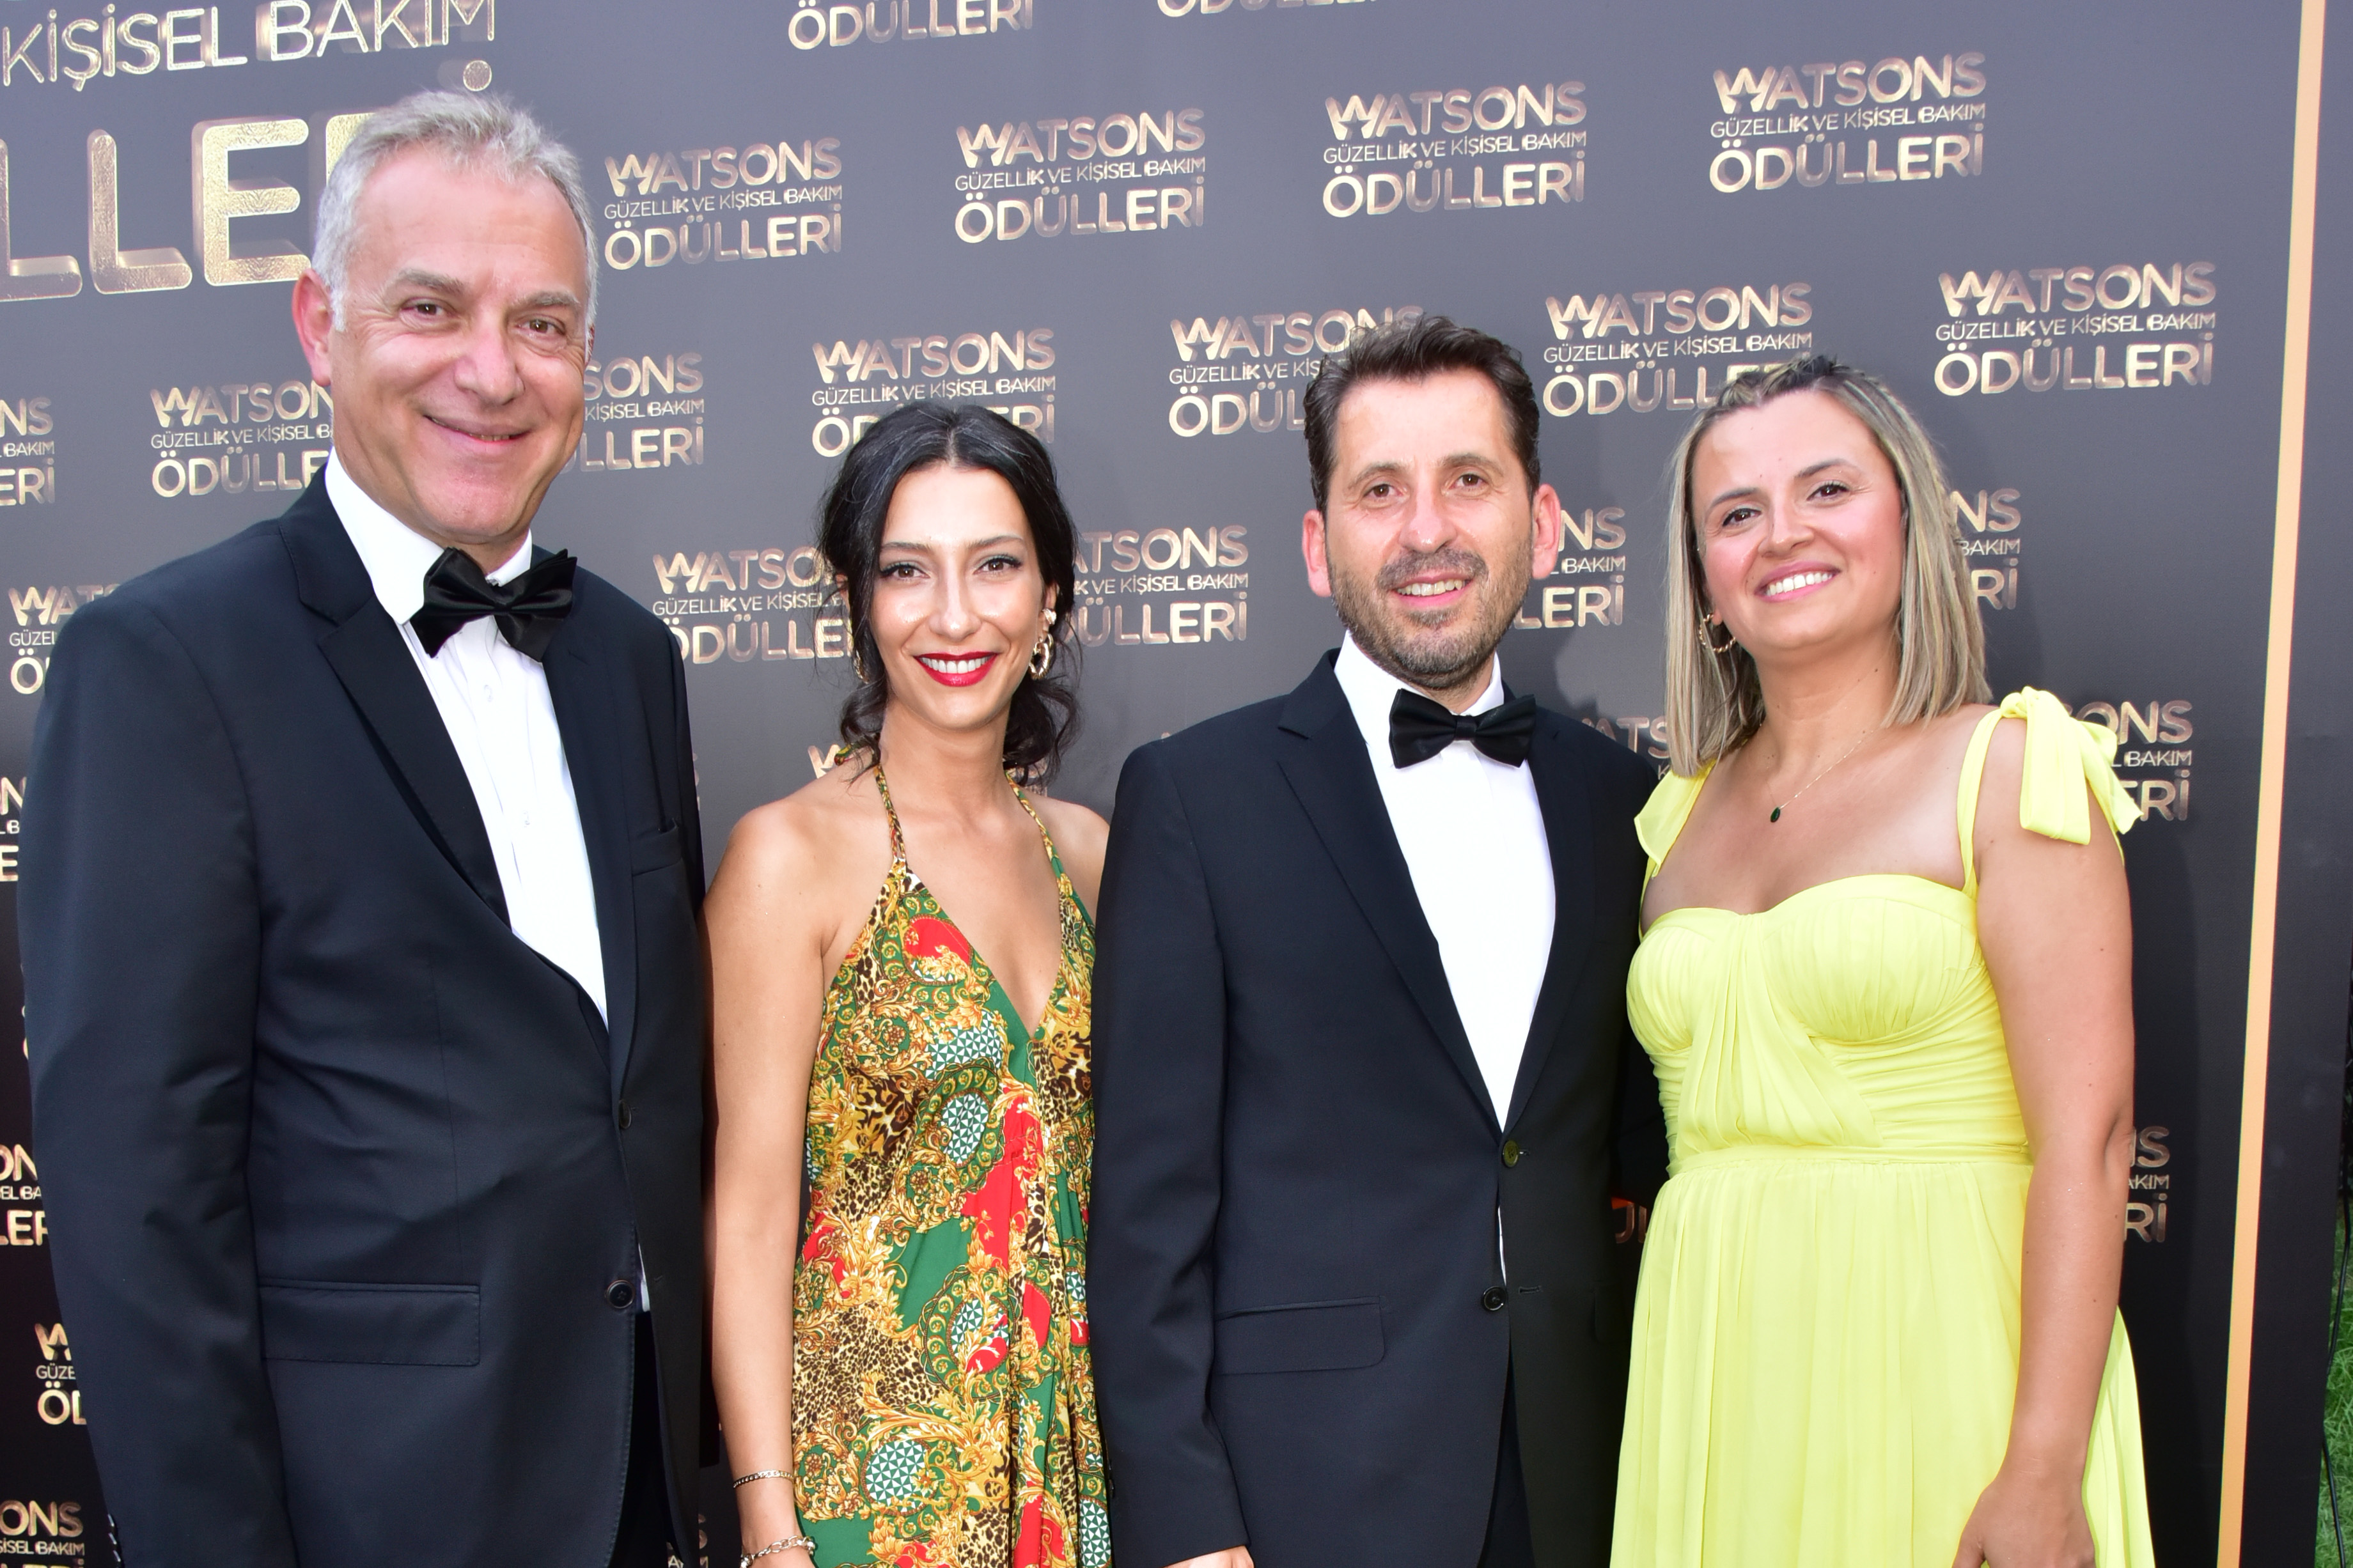 Watsons Güzellik ve Kişisel Bakım Ödülleri Gecesinde Yıldızlar Geçidi Yaşandı